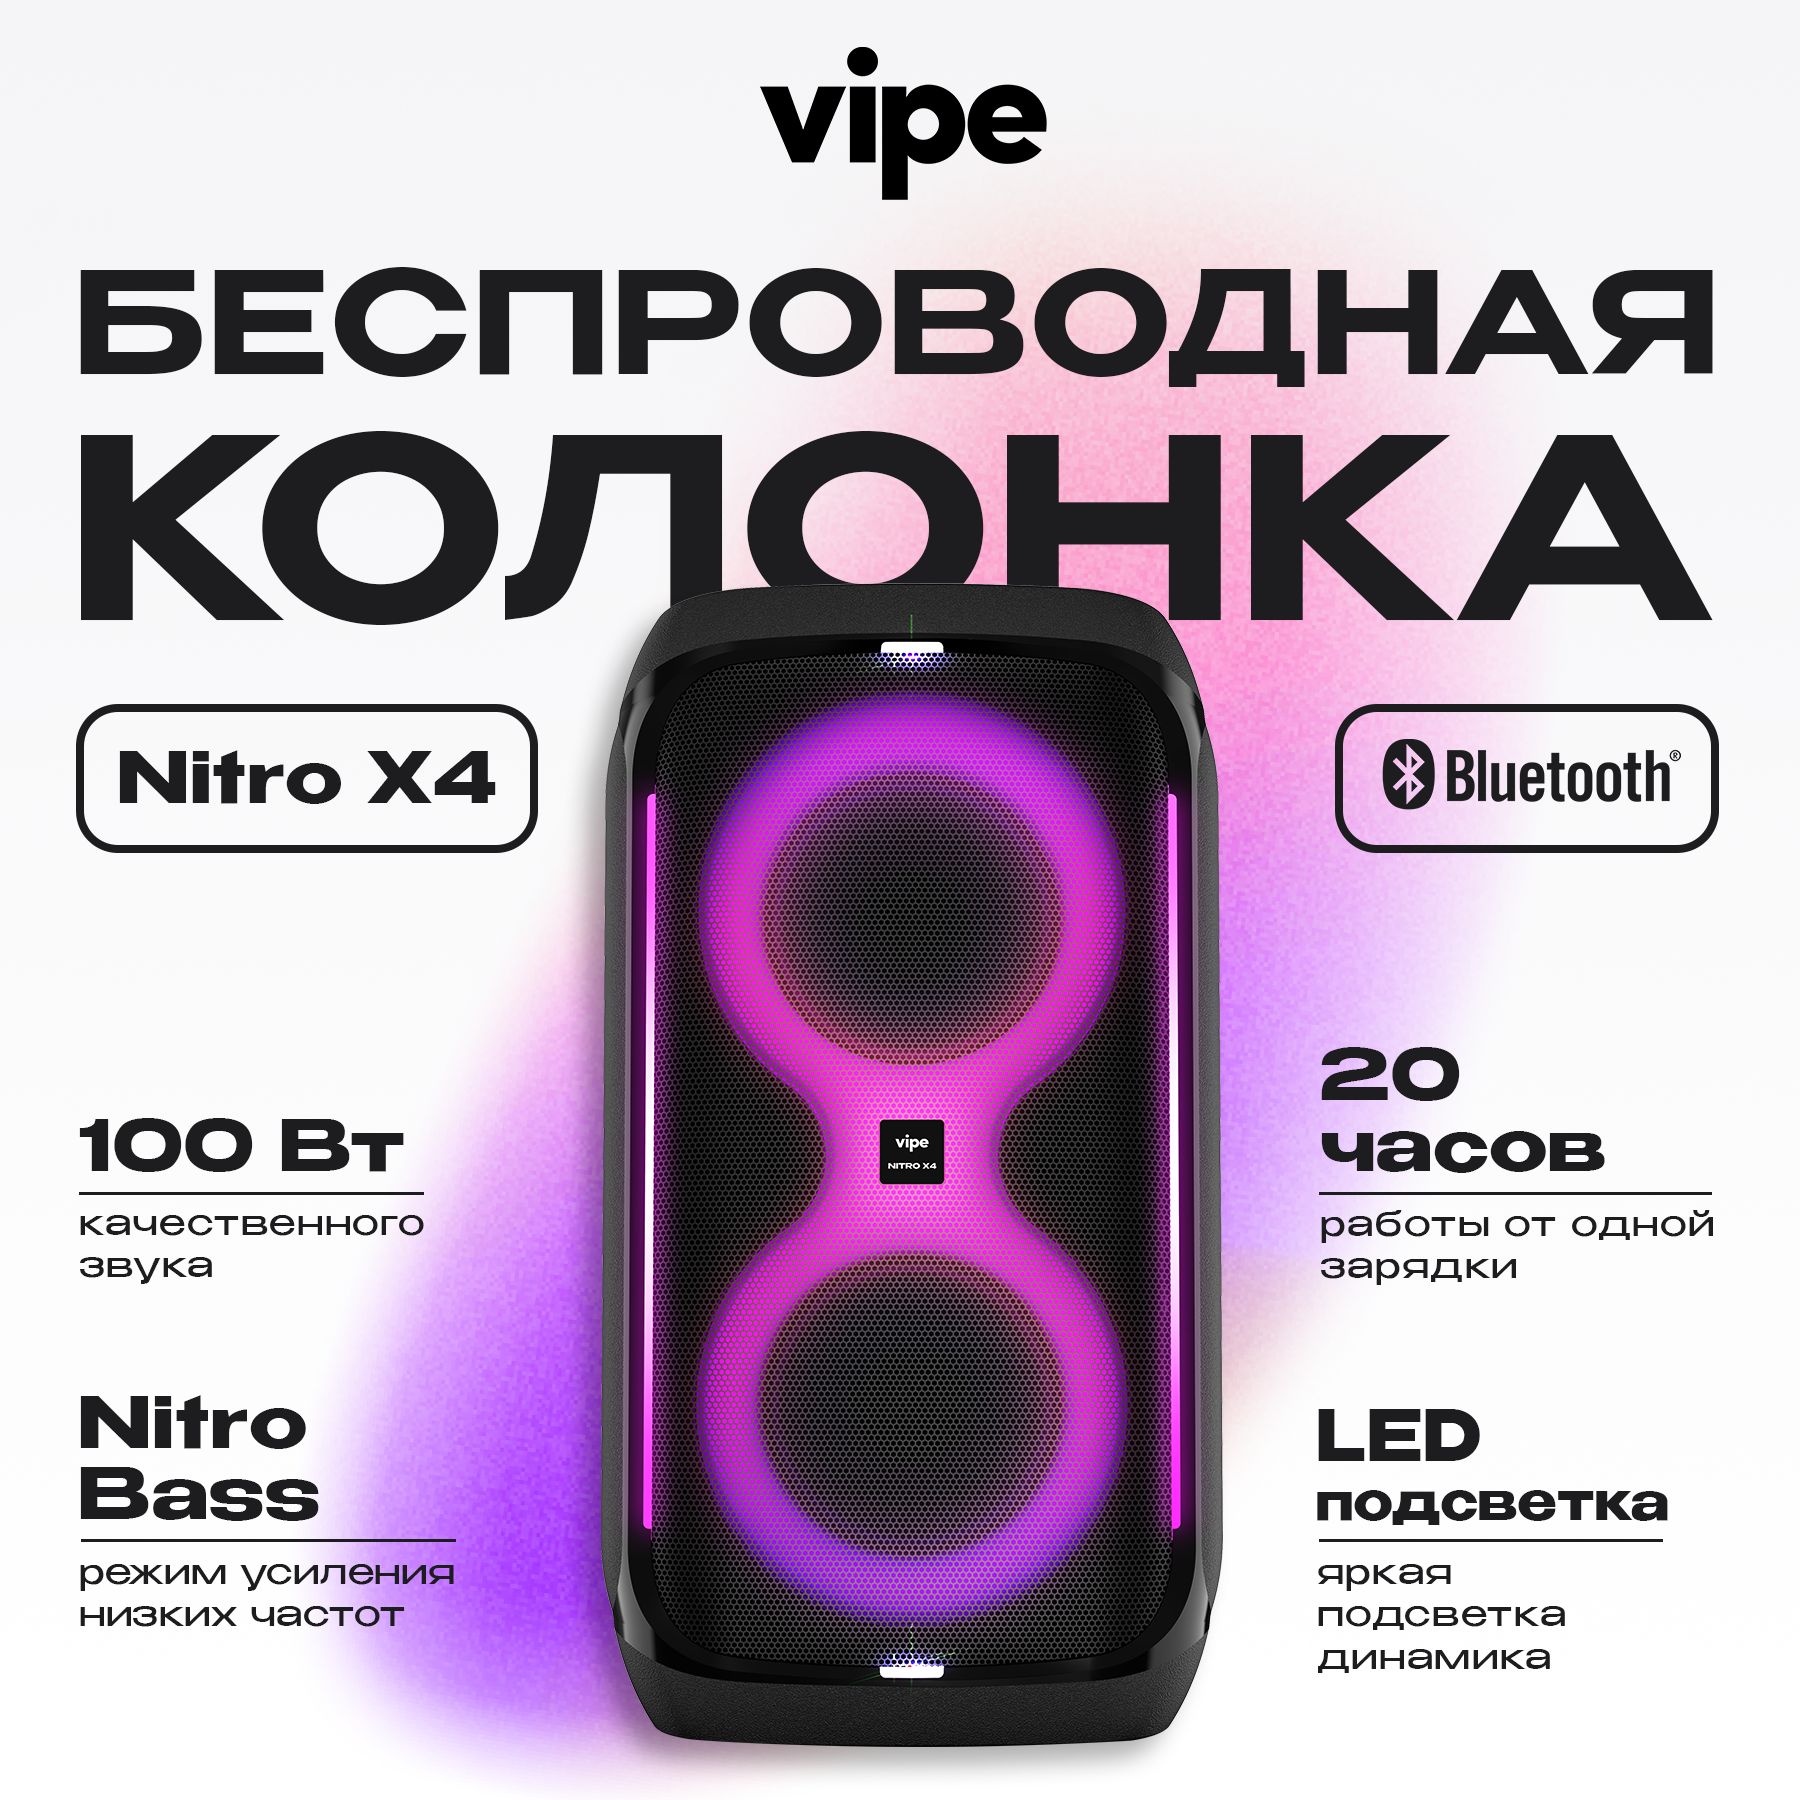 Портативная колонка Vipe Nitro X4 Black (VPMSNITROX4), купить в Москве, цены в интернет-магазинах на Мегамаркет